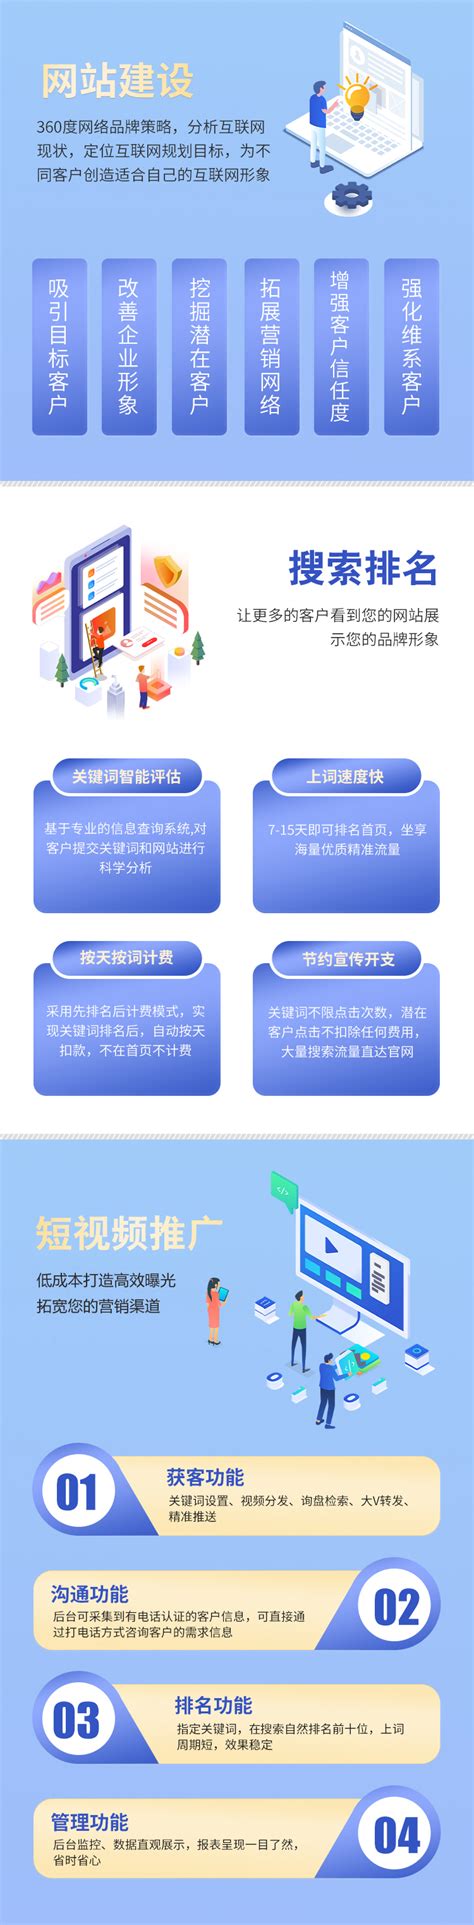 重庆网站推广工作内容介绍